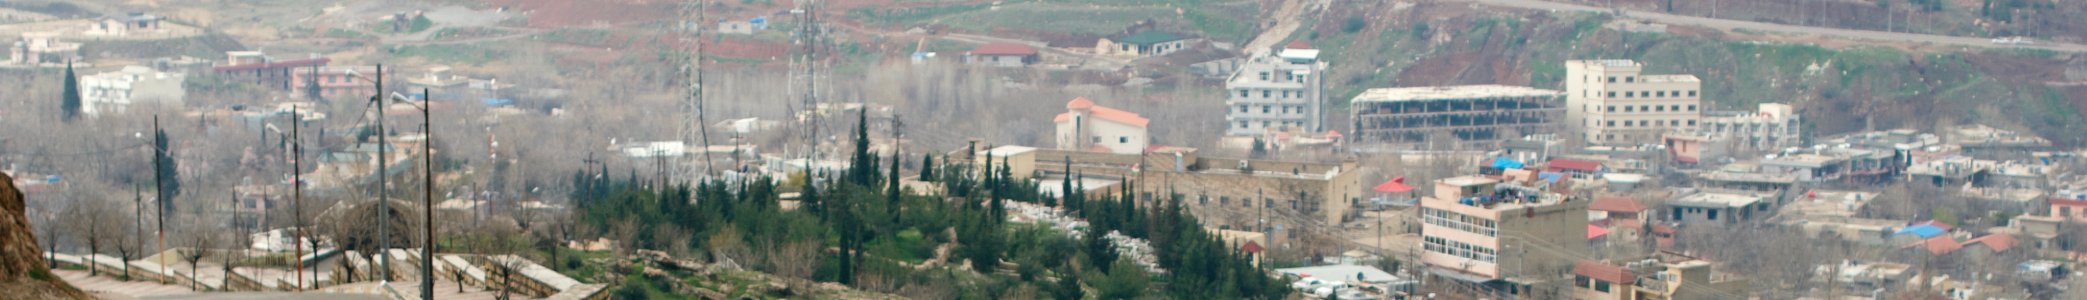 Views along the way and at the Shrine of Raban Boya in Shaqlawa 21 (cropped) photo